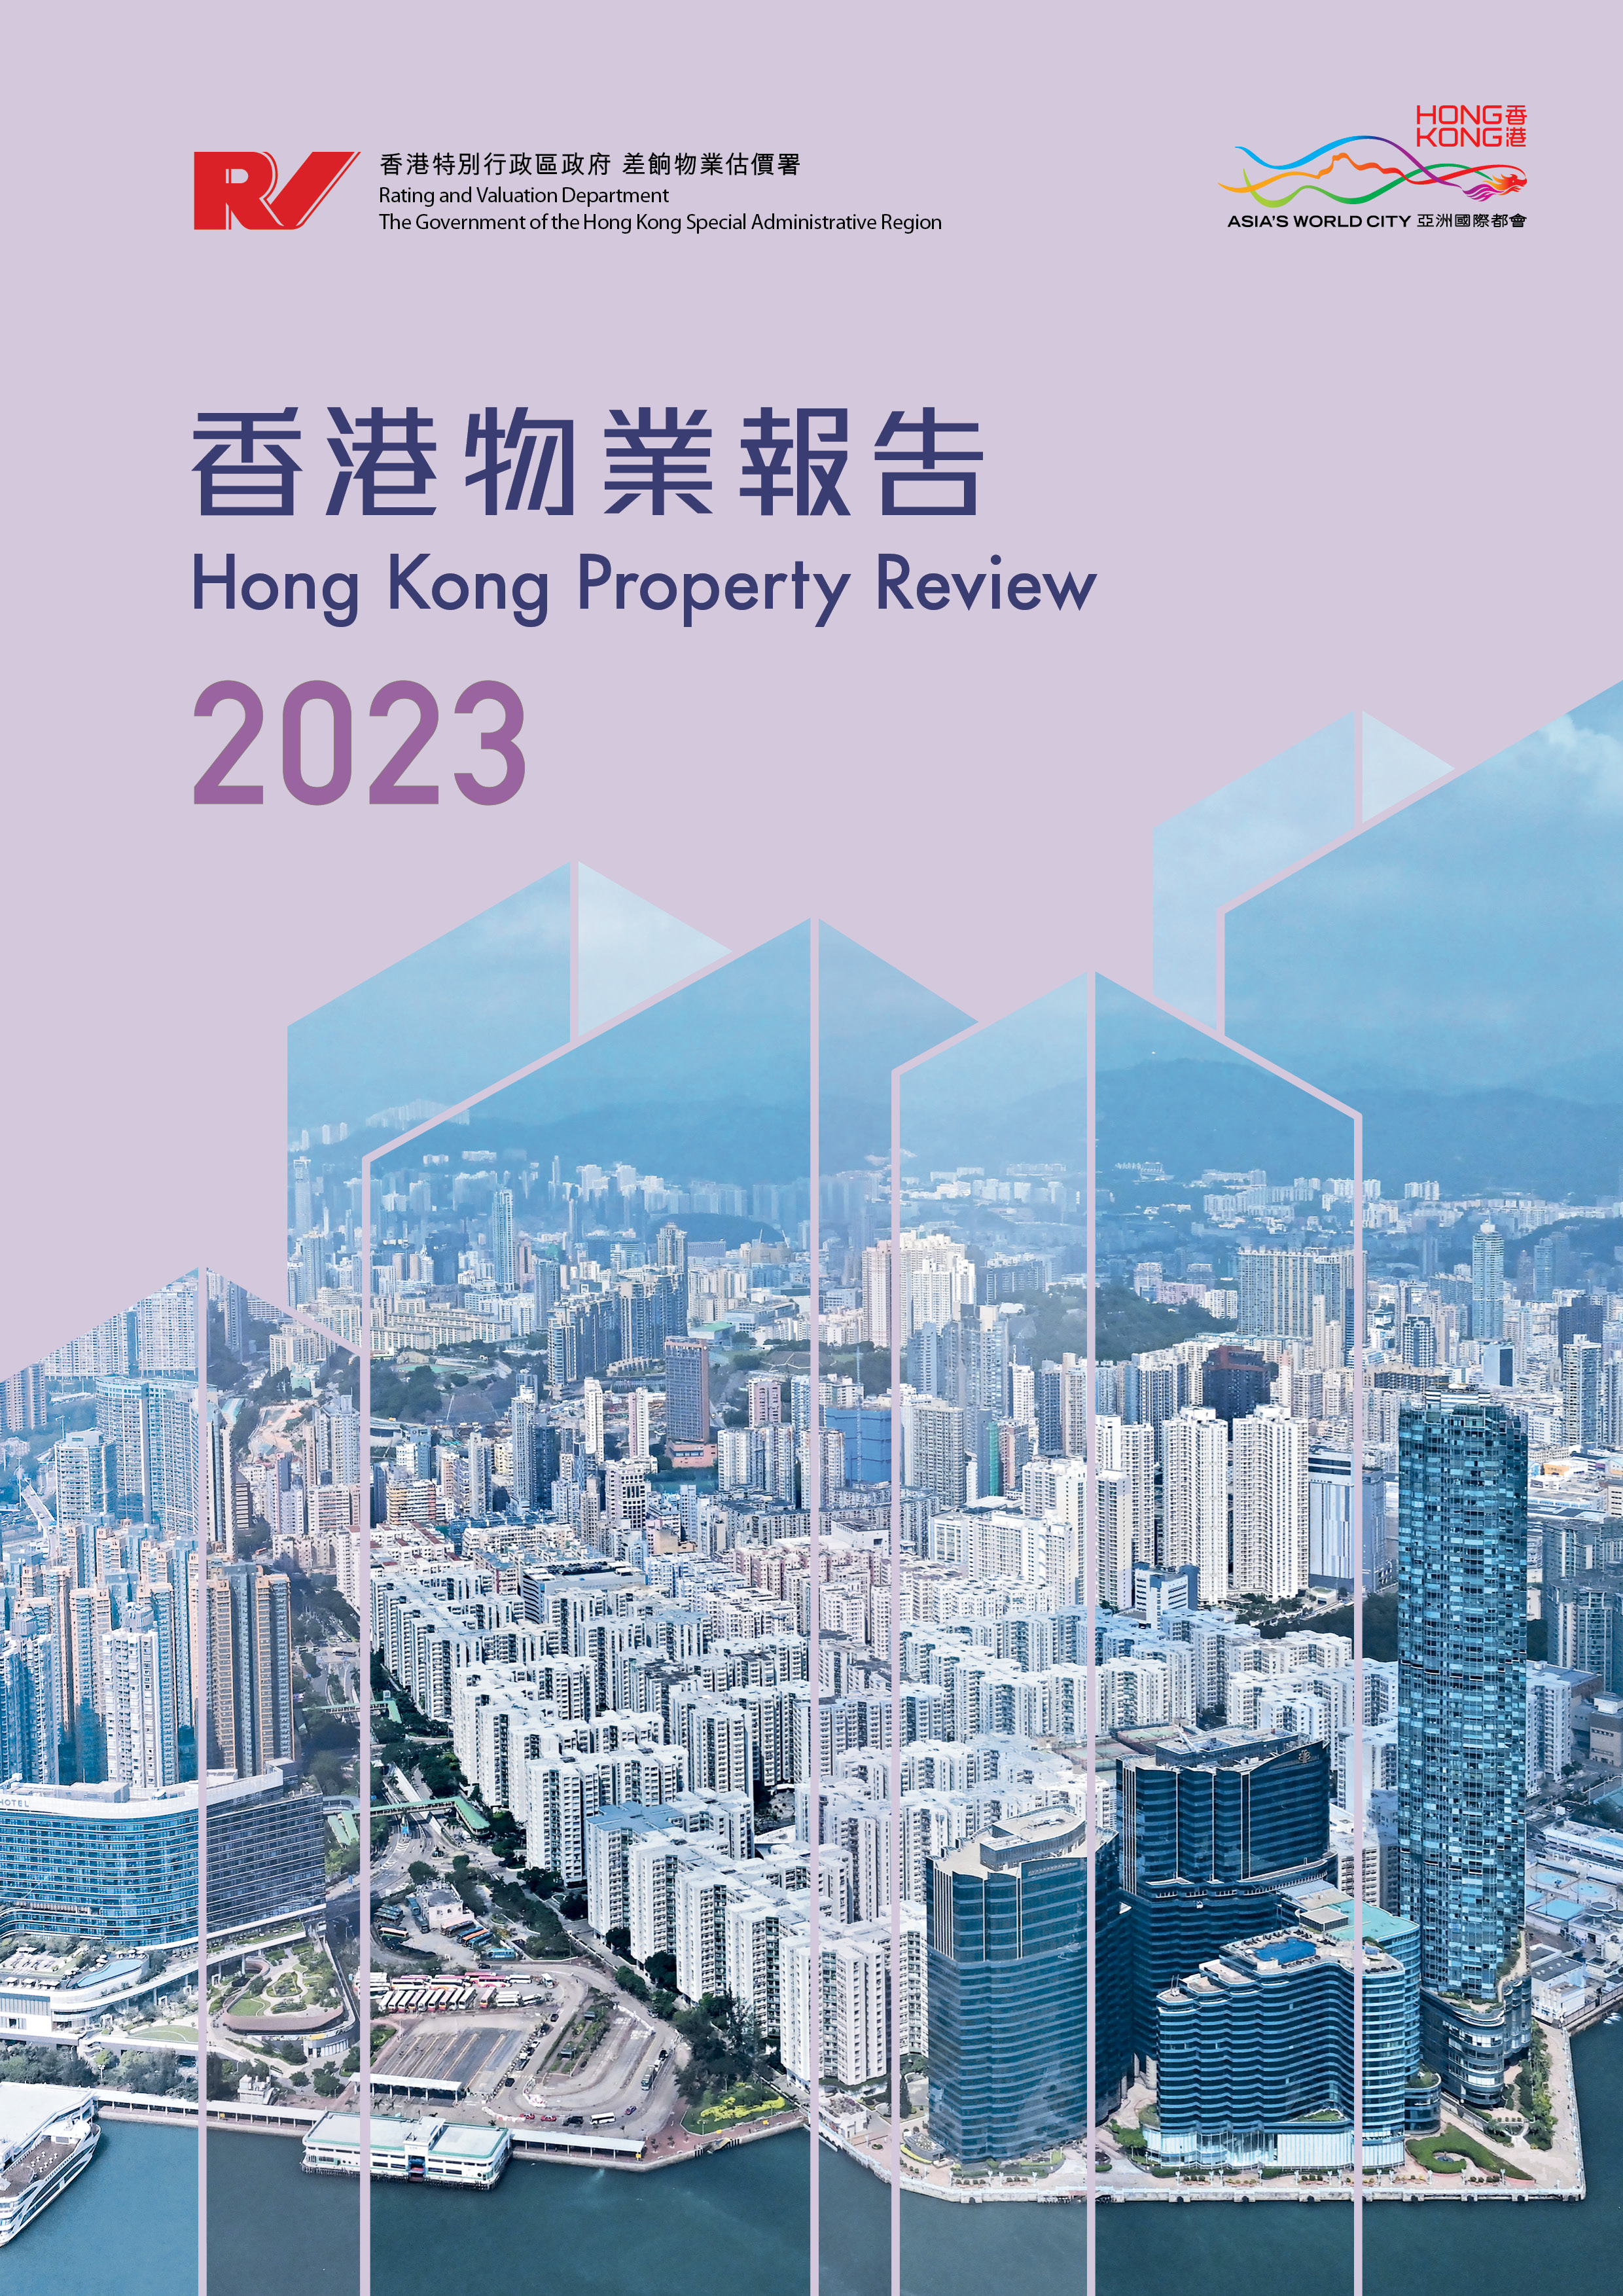 Hong Kong Property Review